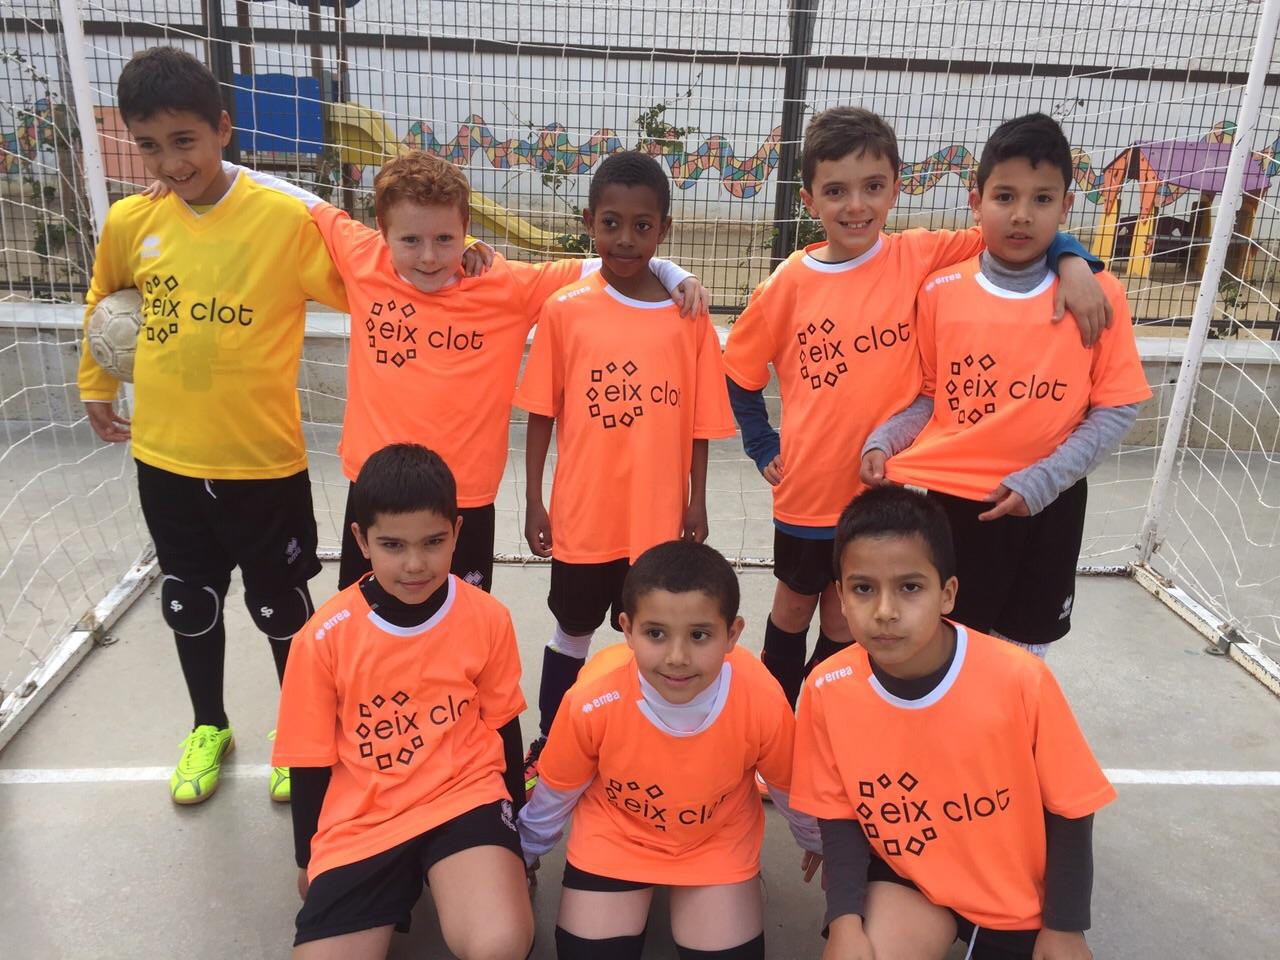 L'Eix Clot amb l'equip de futbol de l'Escola Miralletes